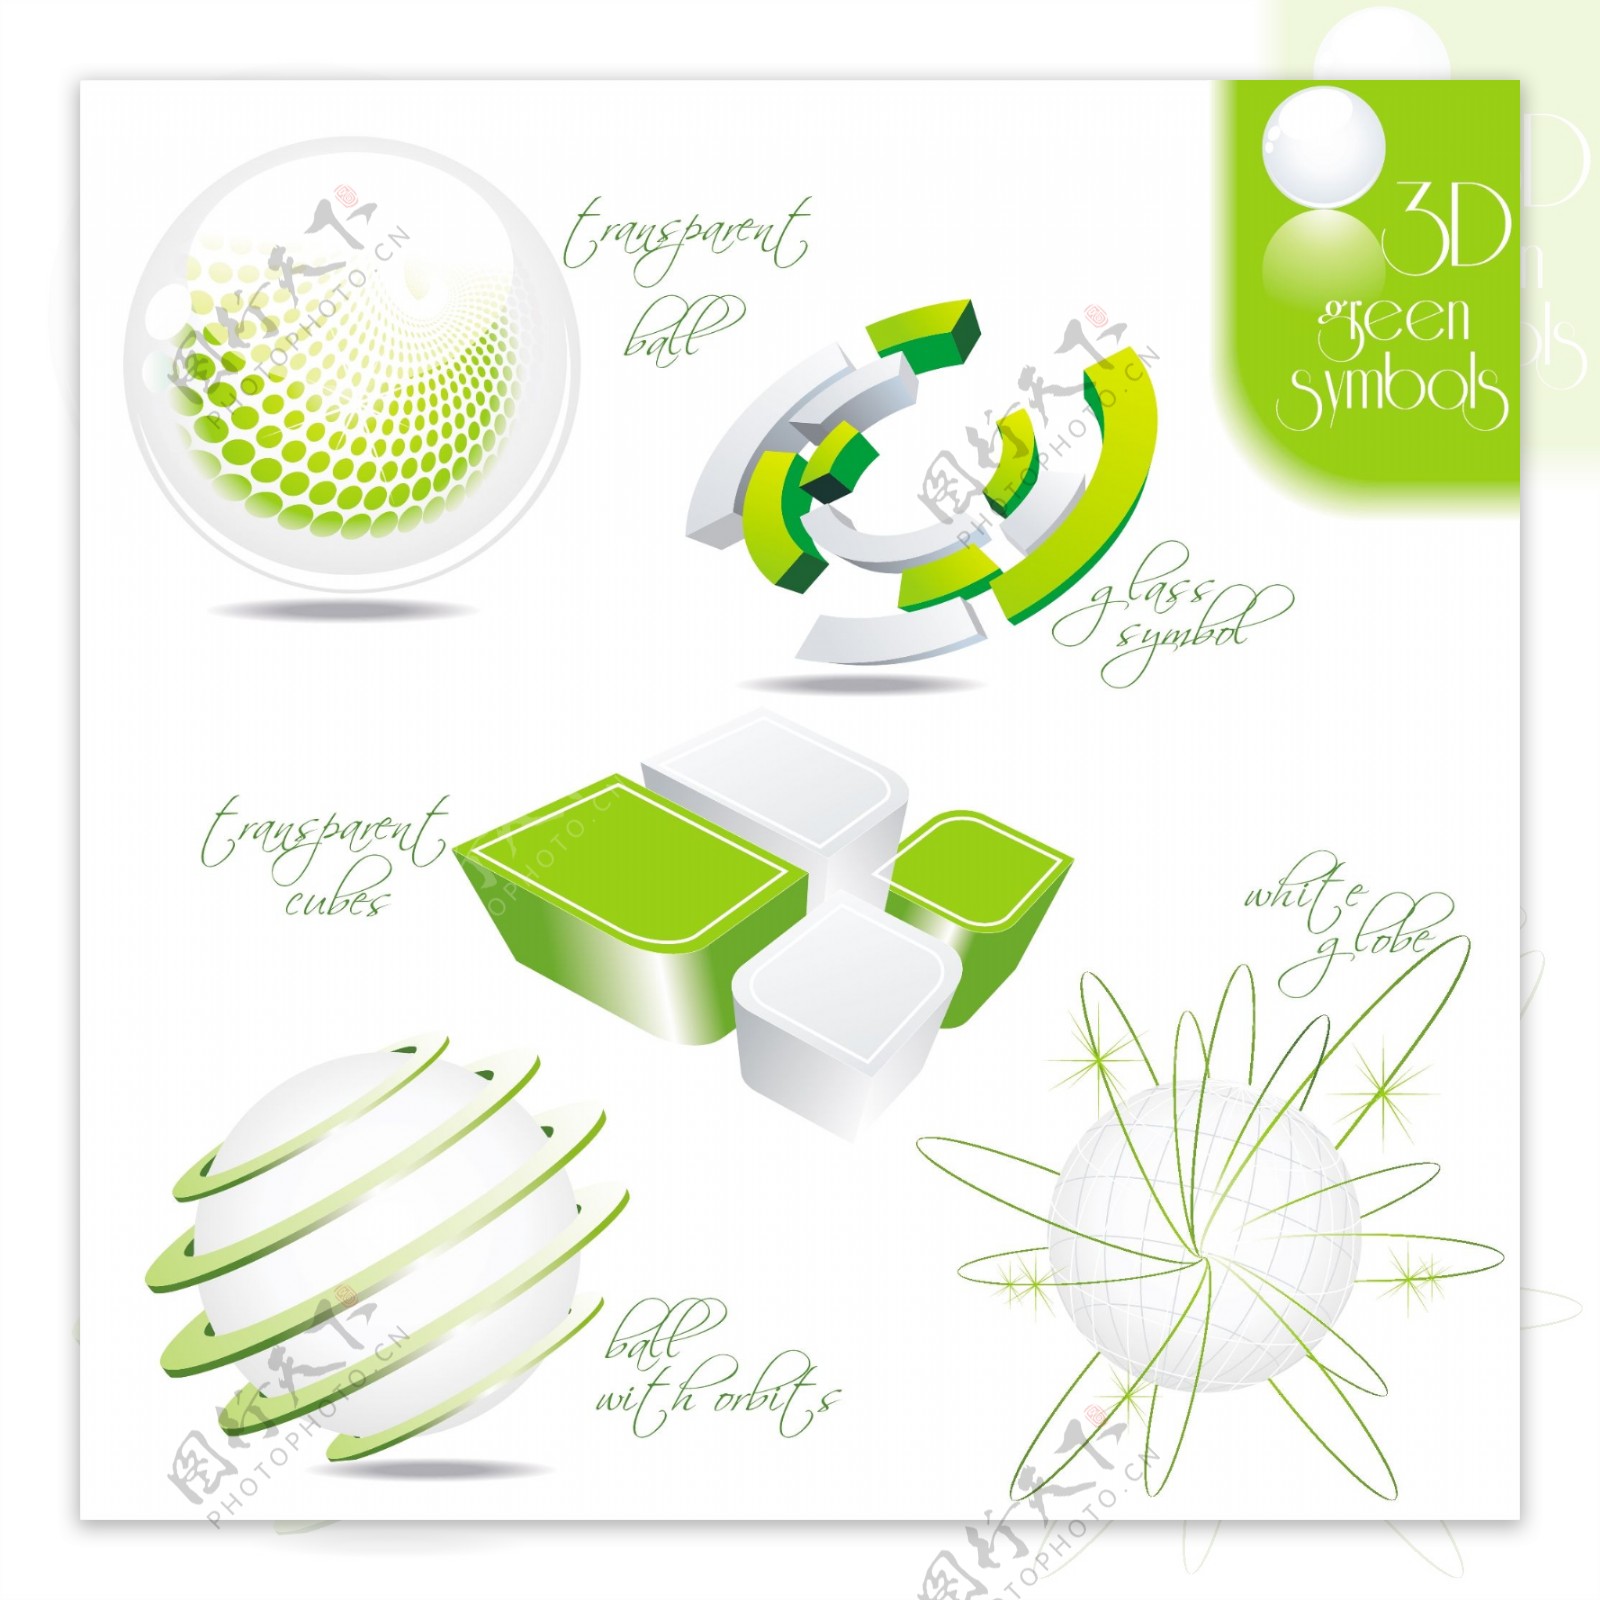 矢量素材绿叶球体素材图片